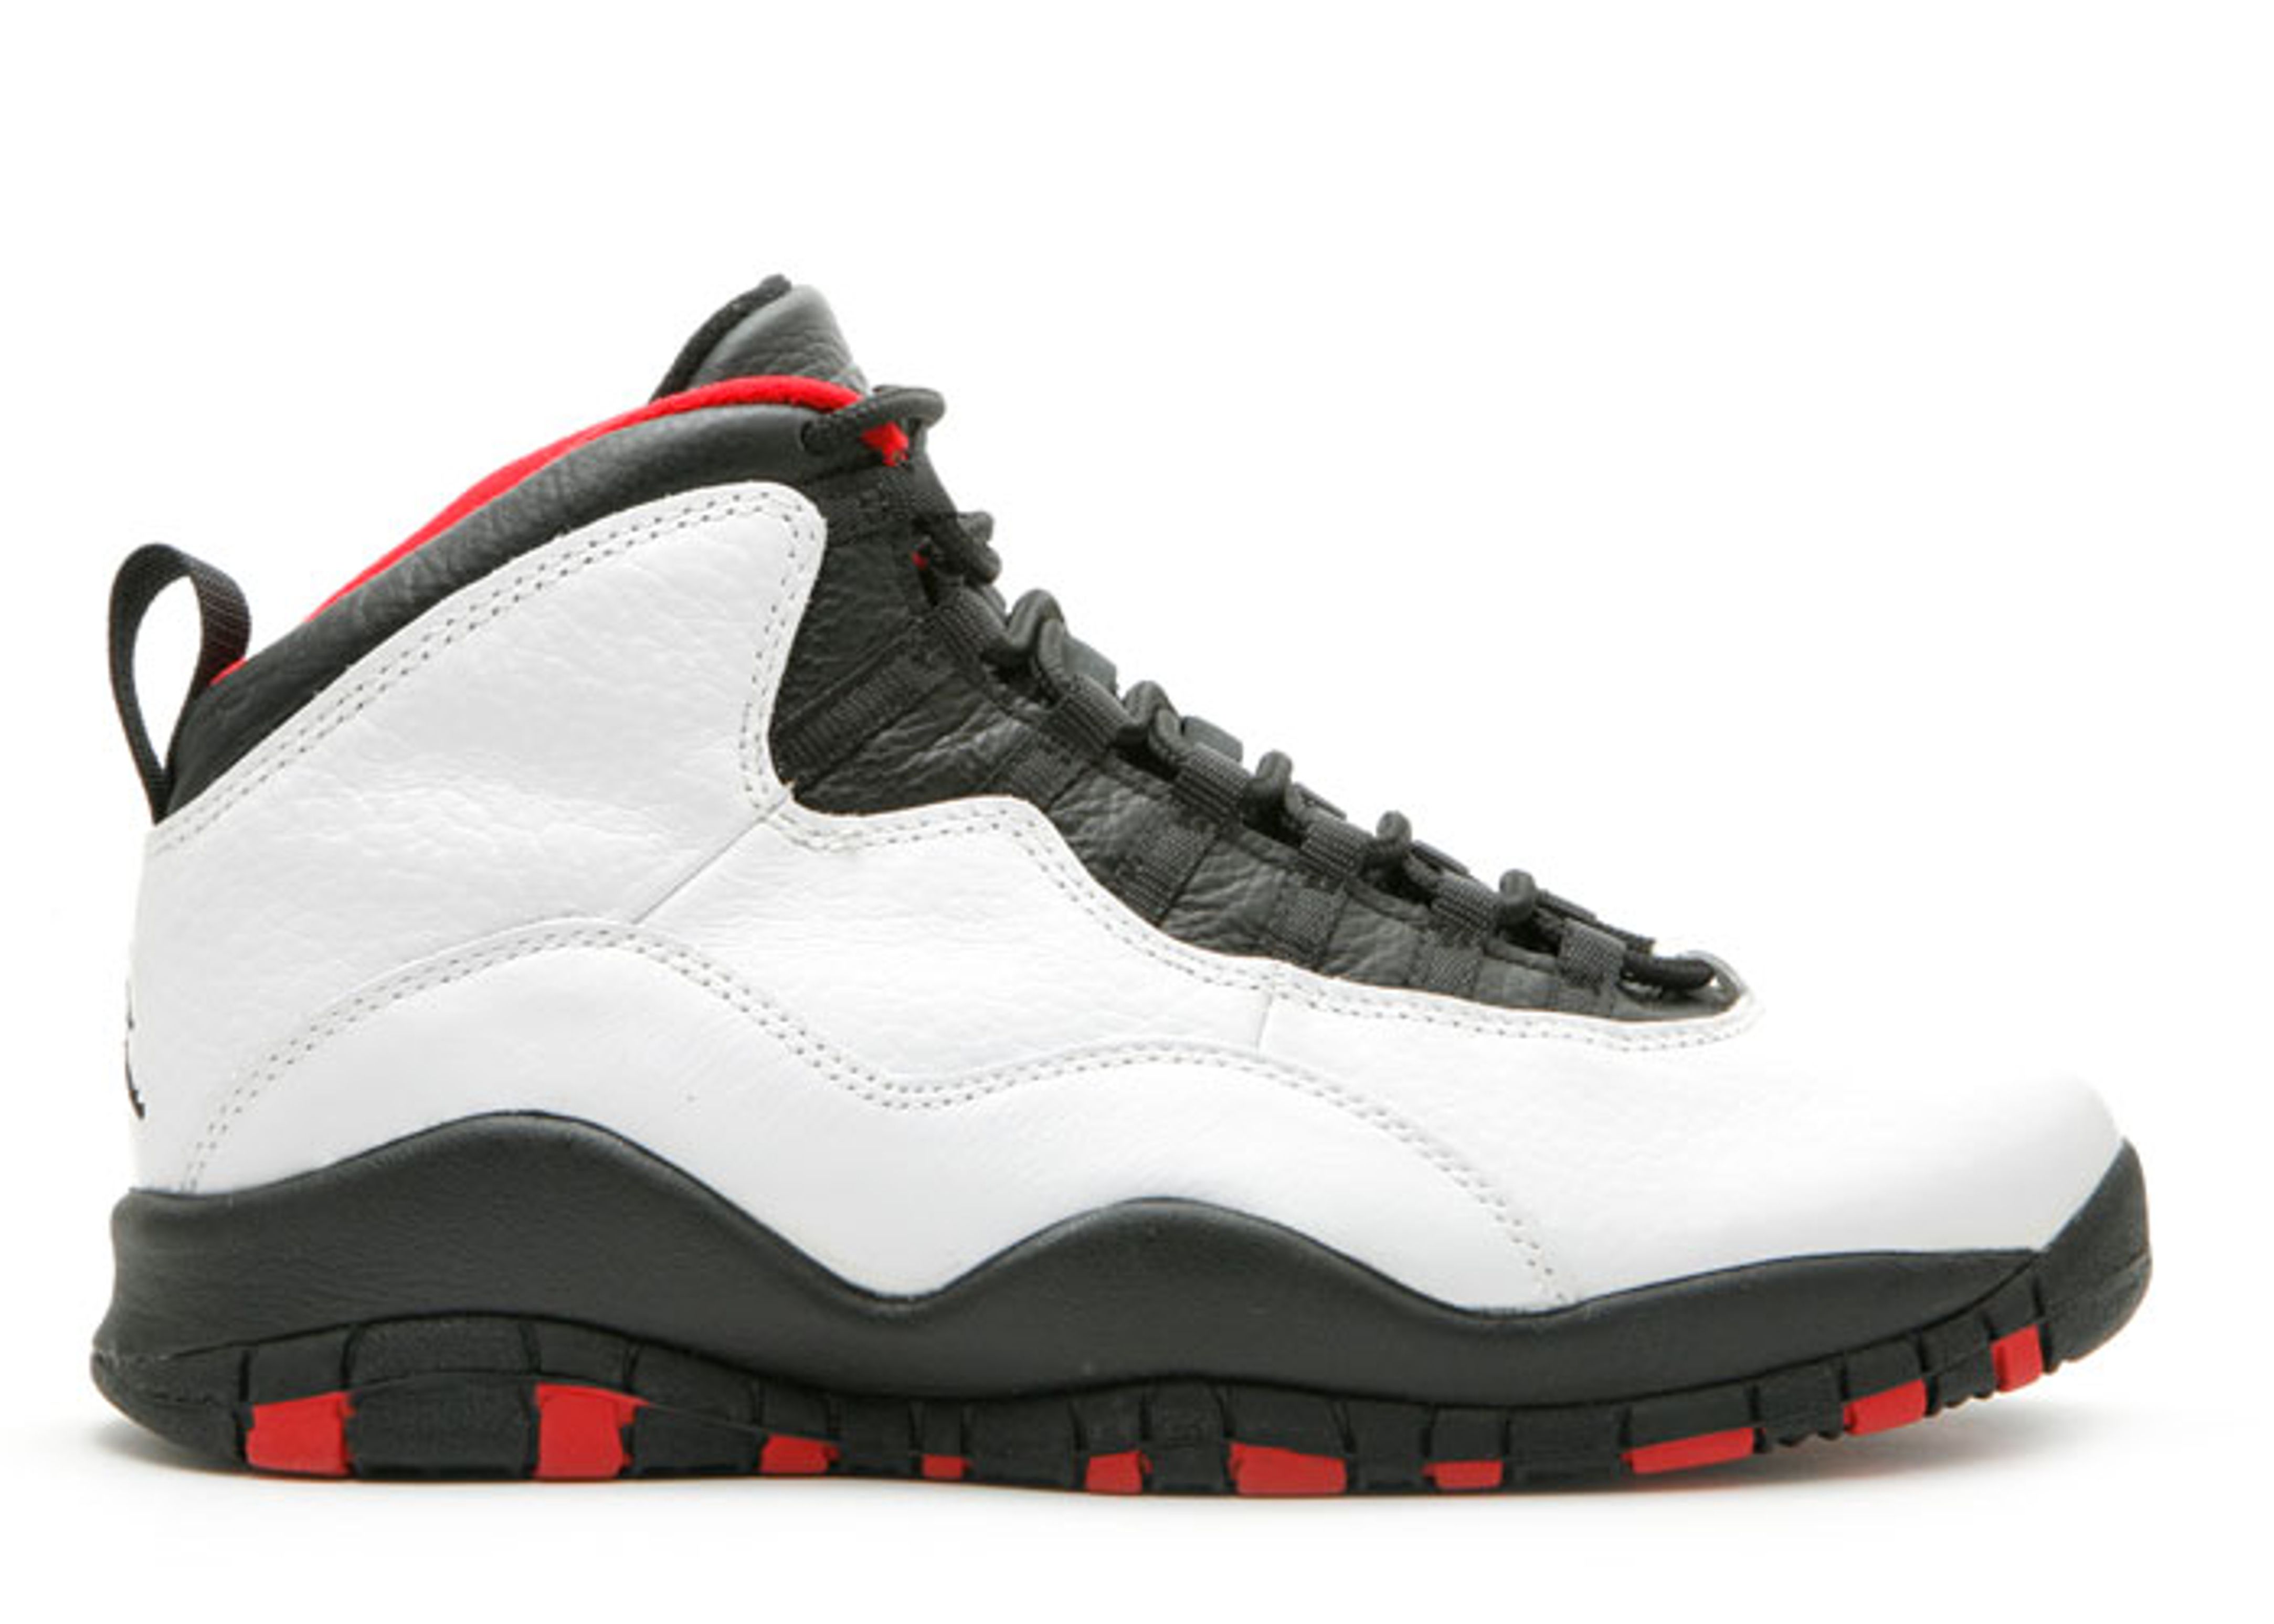 Og 10. Nike Jordan 10 Chicago. Air Jordan 10. Air Jordan 10 Chicago. Nike Jordan 10 og.